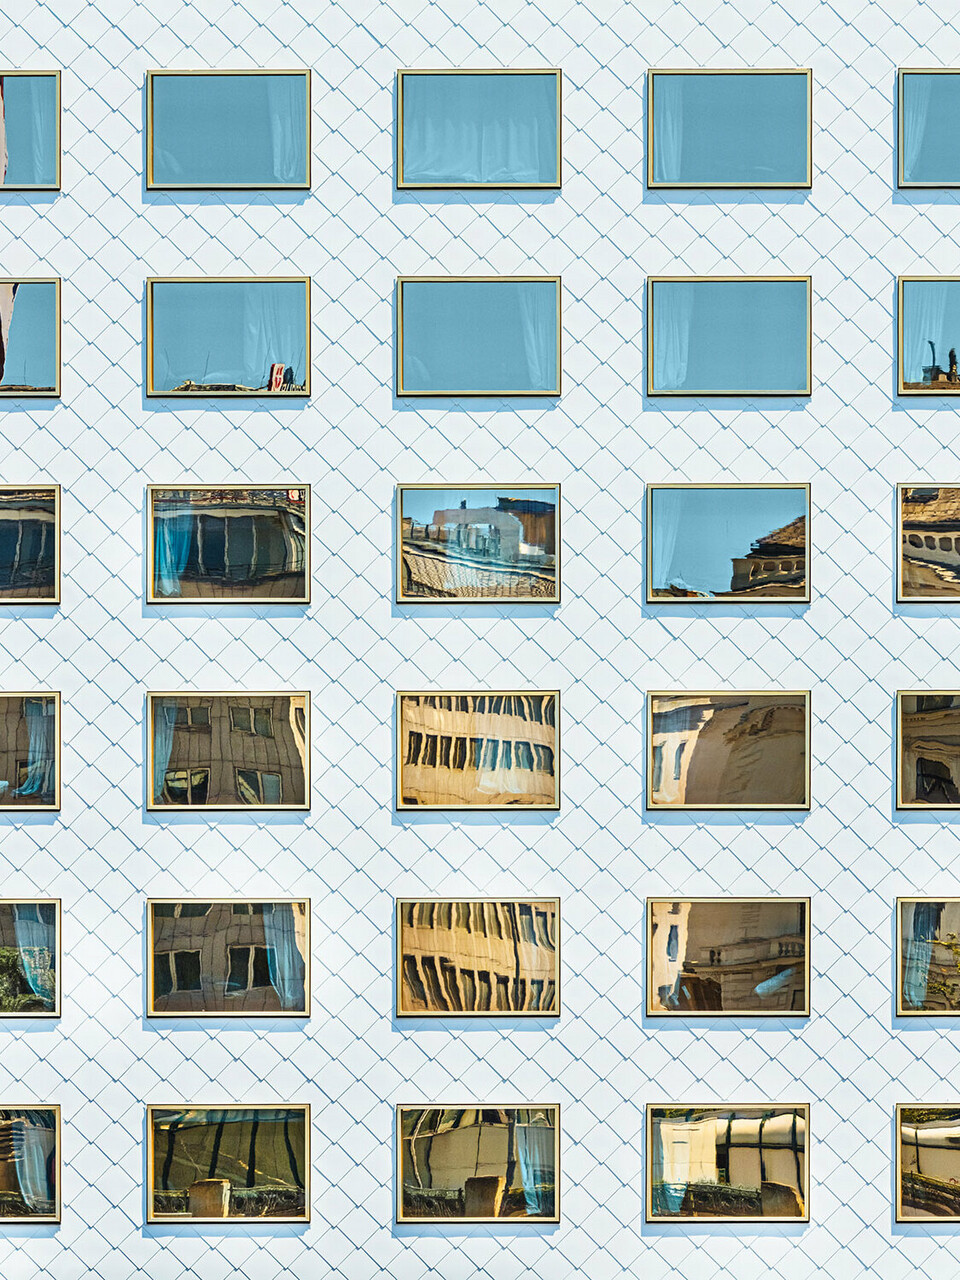 La façade de l'hôtel THE ROCK Radisson RED Vienna, conçue par INNOCAD architecture, vue en perspective normale ; on peut y voir plusieurs losanges de façade d'un blanc pur et des fenêtres à vitrage miroir qui se fondent dans l'environnement.